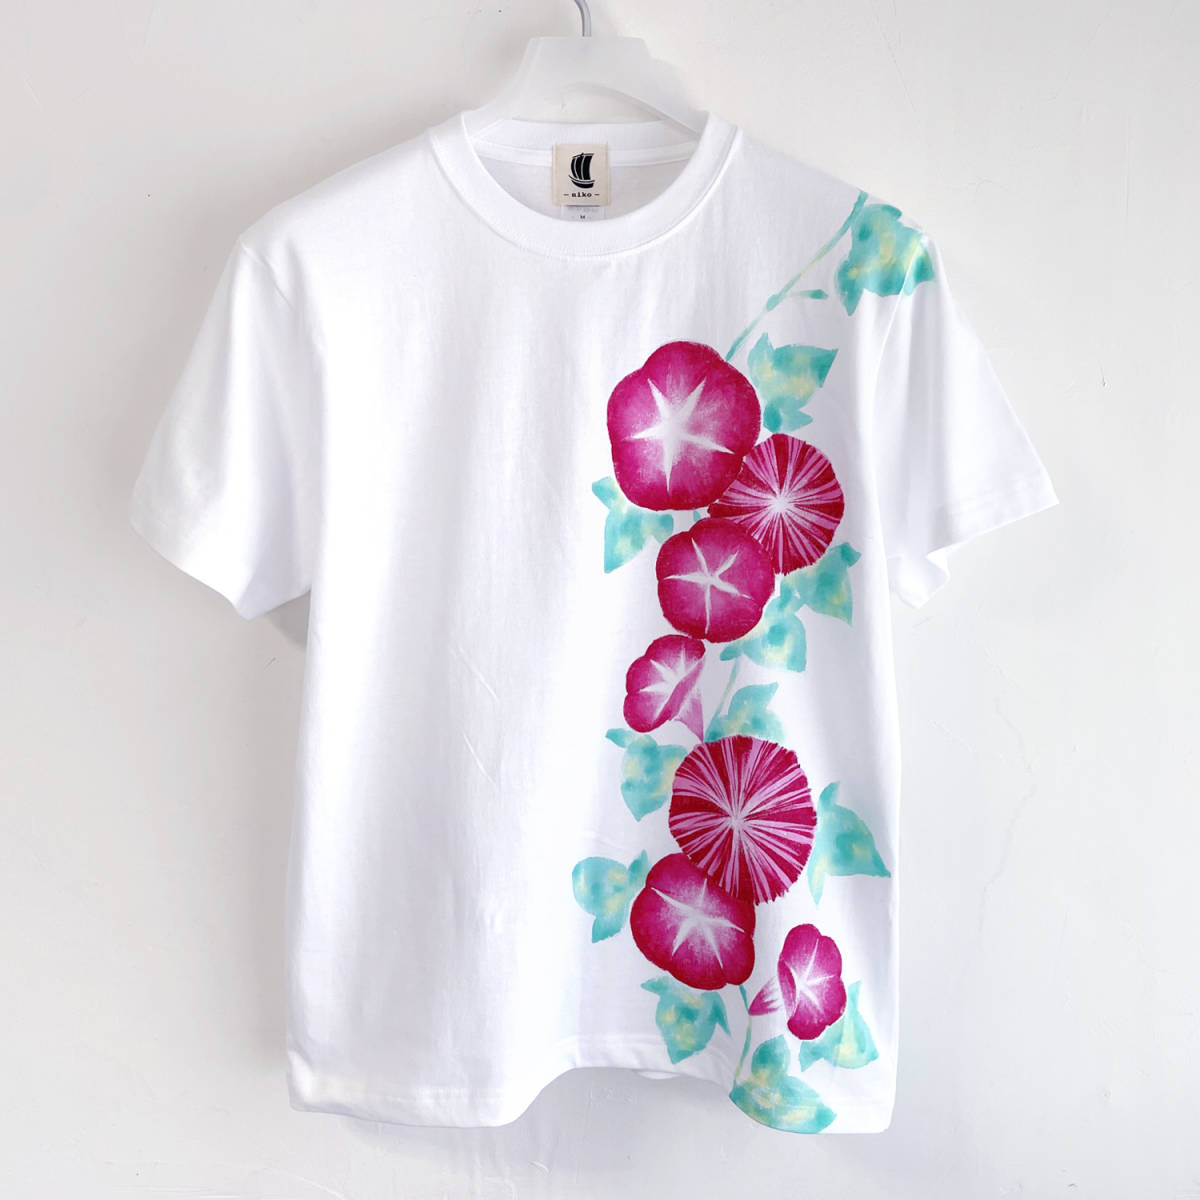 남성 티셔츠, S 사이즈, 핑크 나팔꽃 패턴 티셔츠, 하얀색, 수공, 손으로 그린 티셔츠, 꽃무늬, 작은 크기, 크루 넥, 무늬가 있는